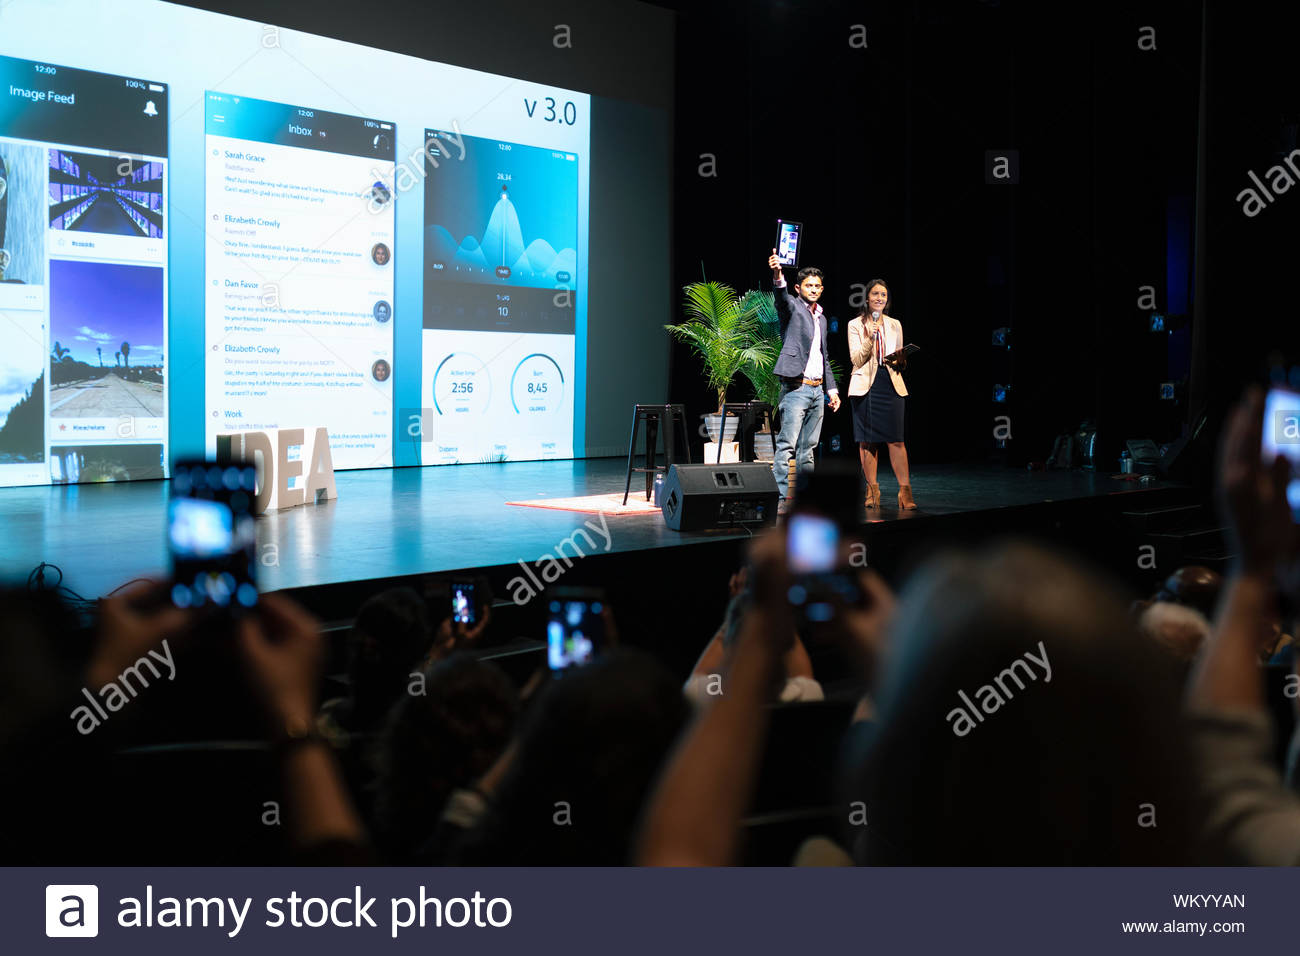 App development speakers on stage Stock Photo